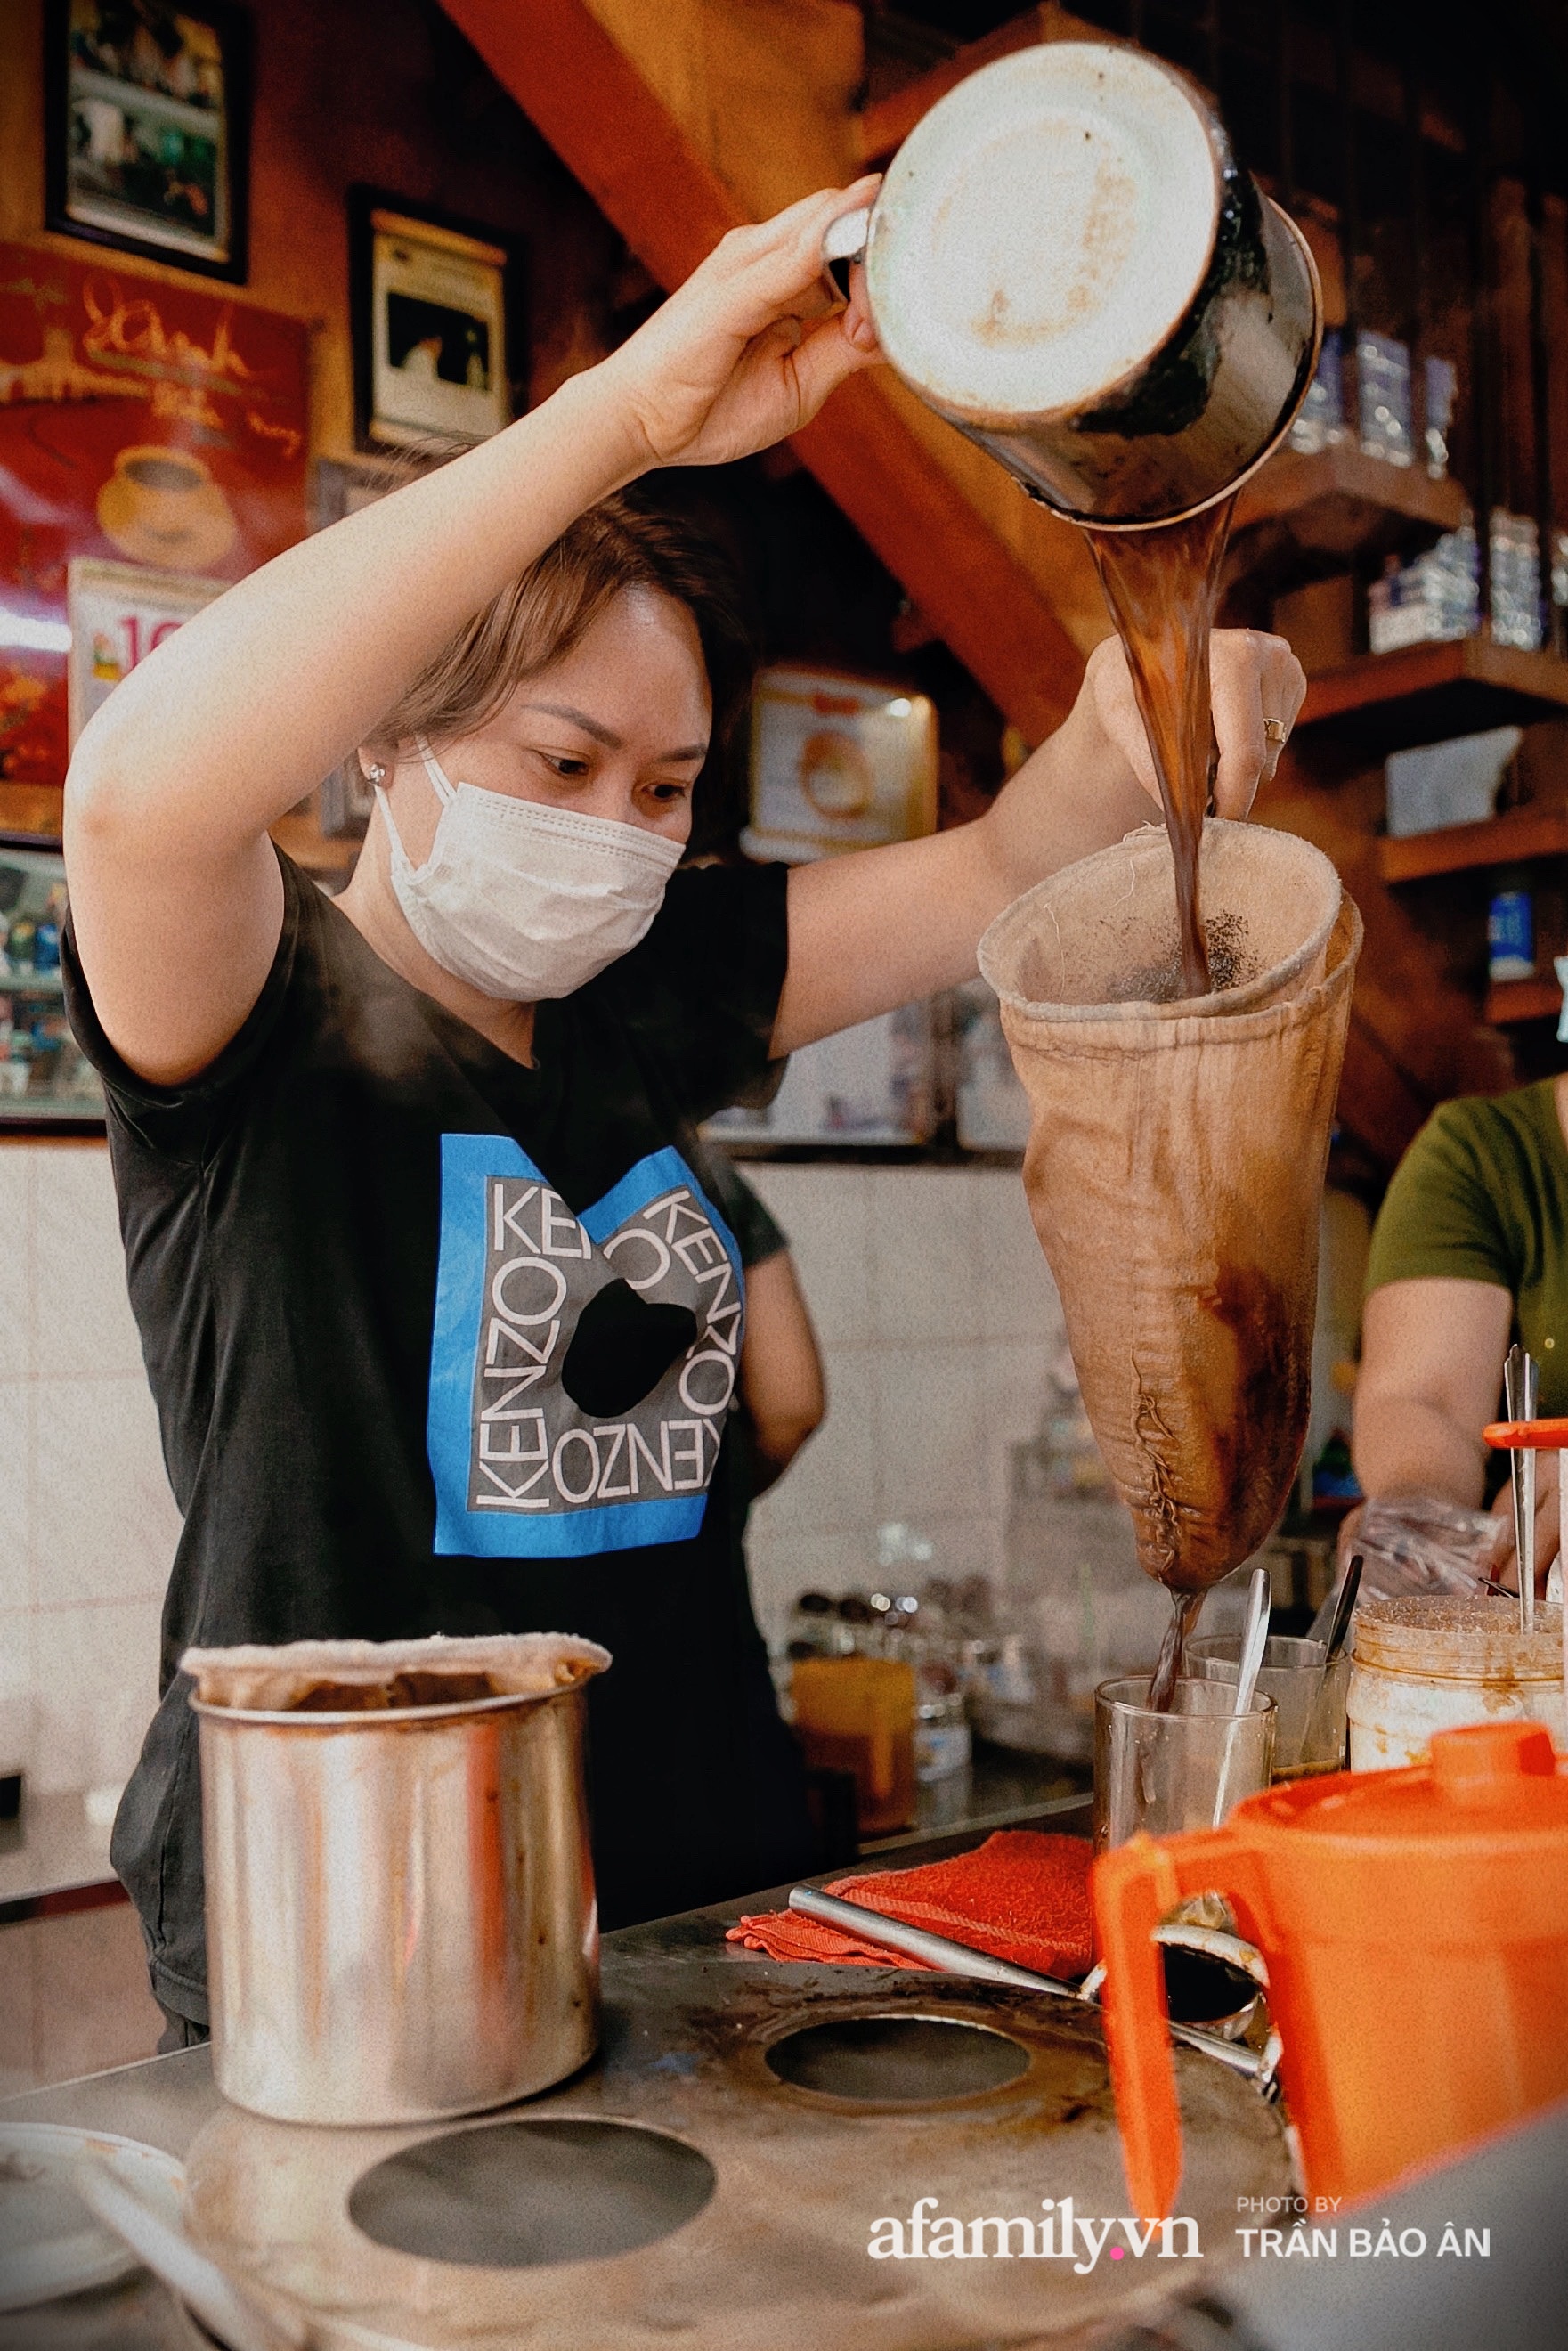 Cà phê Vợt - điểm hẹn mỗi đêm của giới trẻ ở Sài Gòn, không chỉ bán cà phê mà còn cả những kỷ niệm  - Ảnh 4.